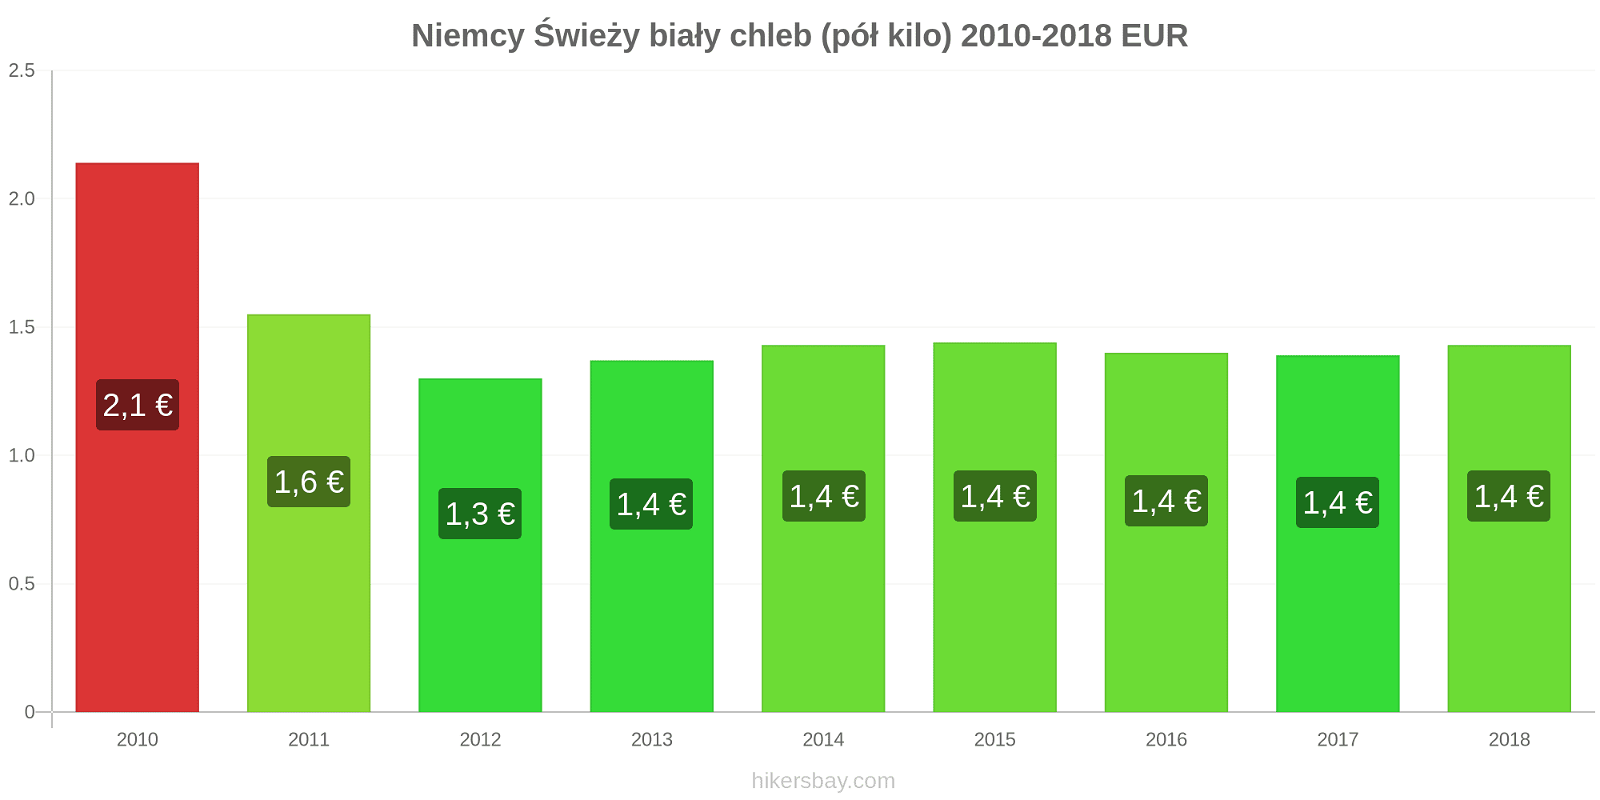 Niemcy zmiany cen Chleb pół kilo hikersbay.com